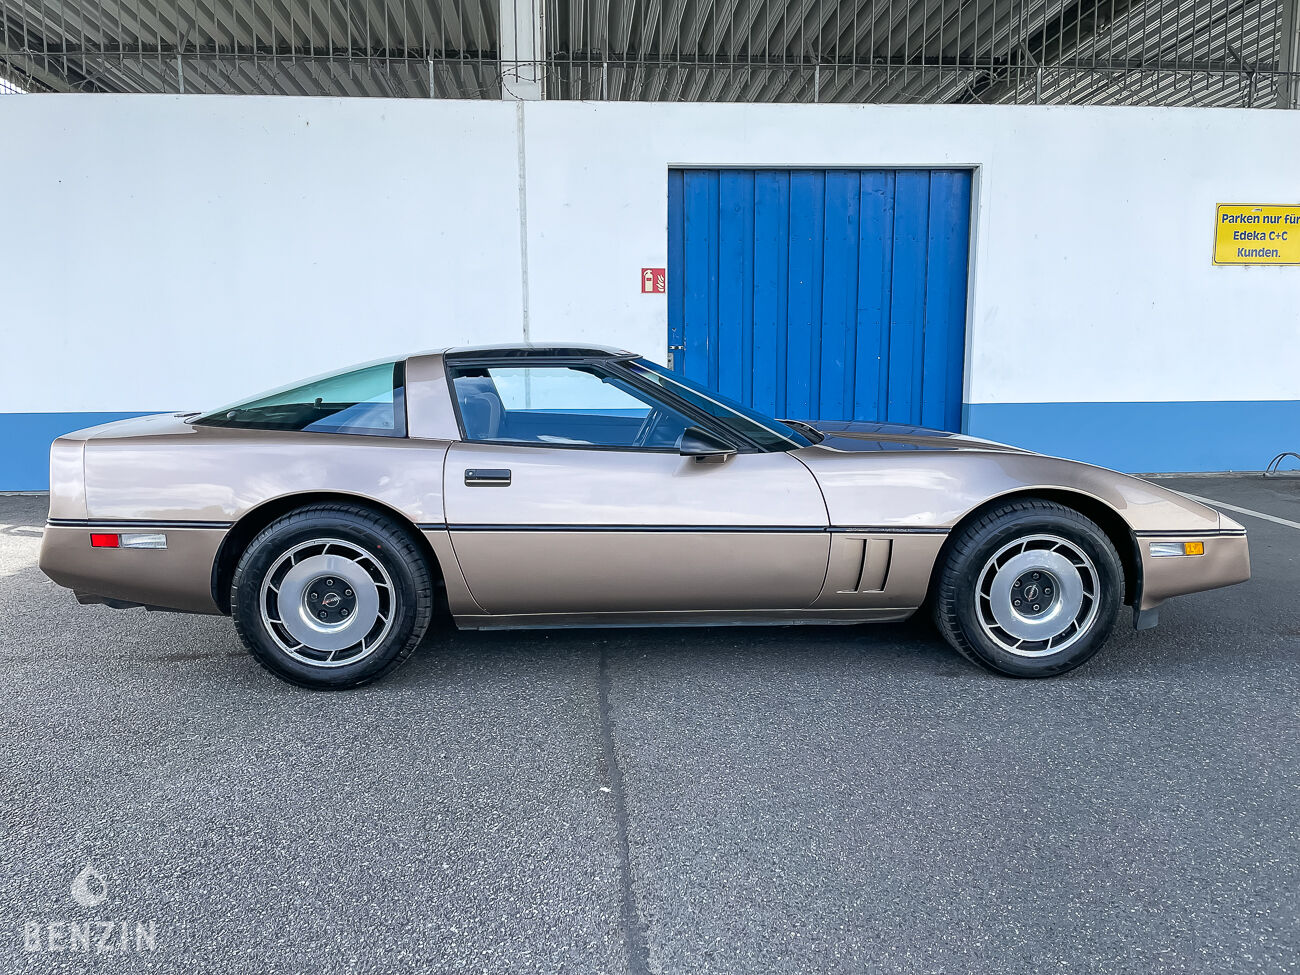 Corvette C4 1984 à vendre te koop to sell zu verkaufen se vende en vendita